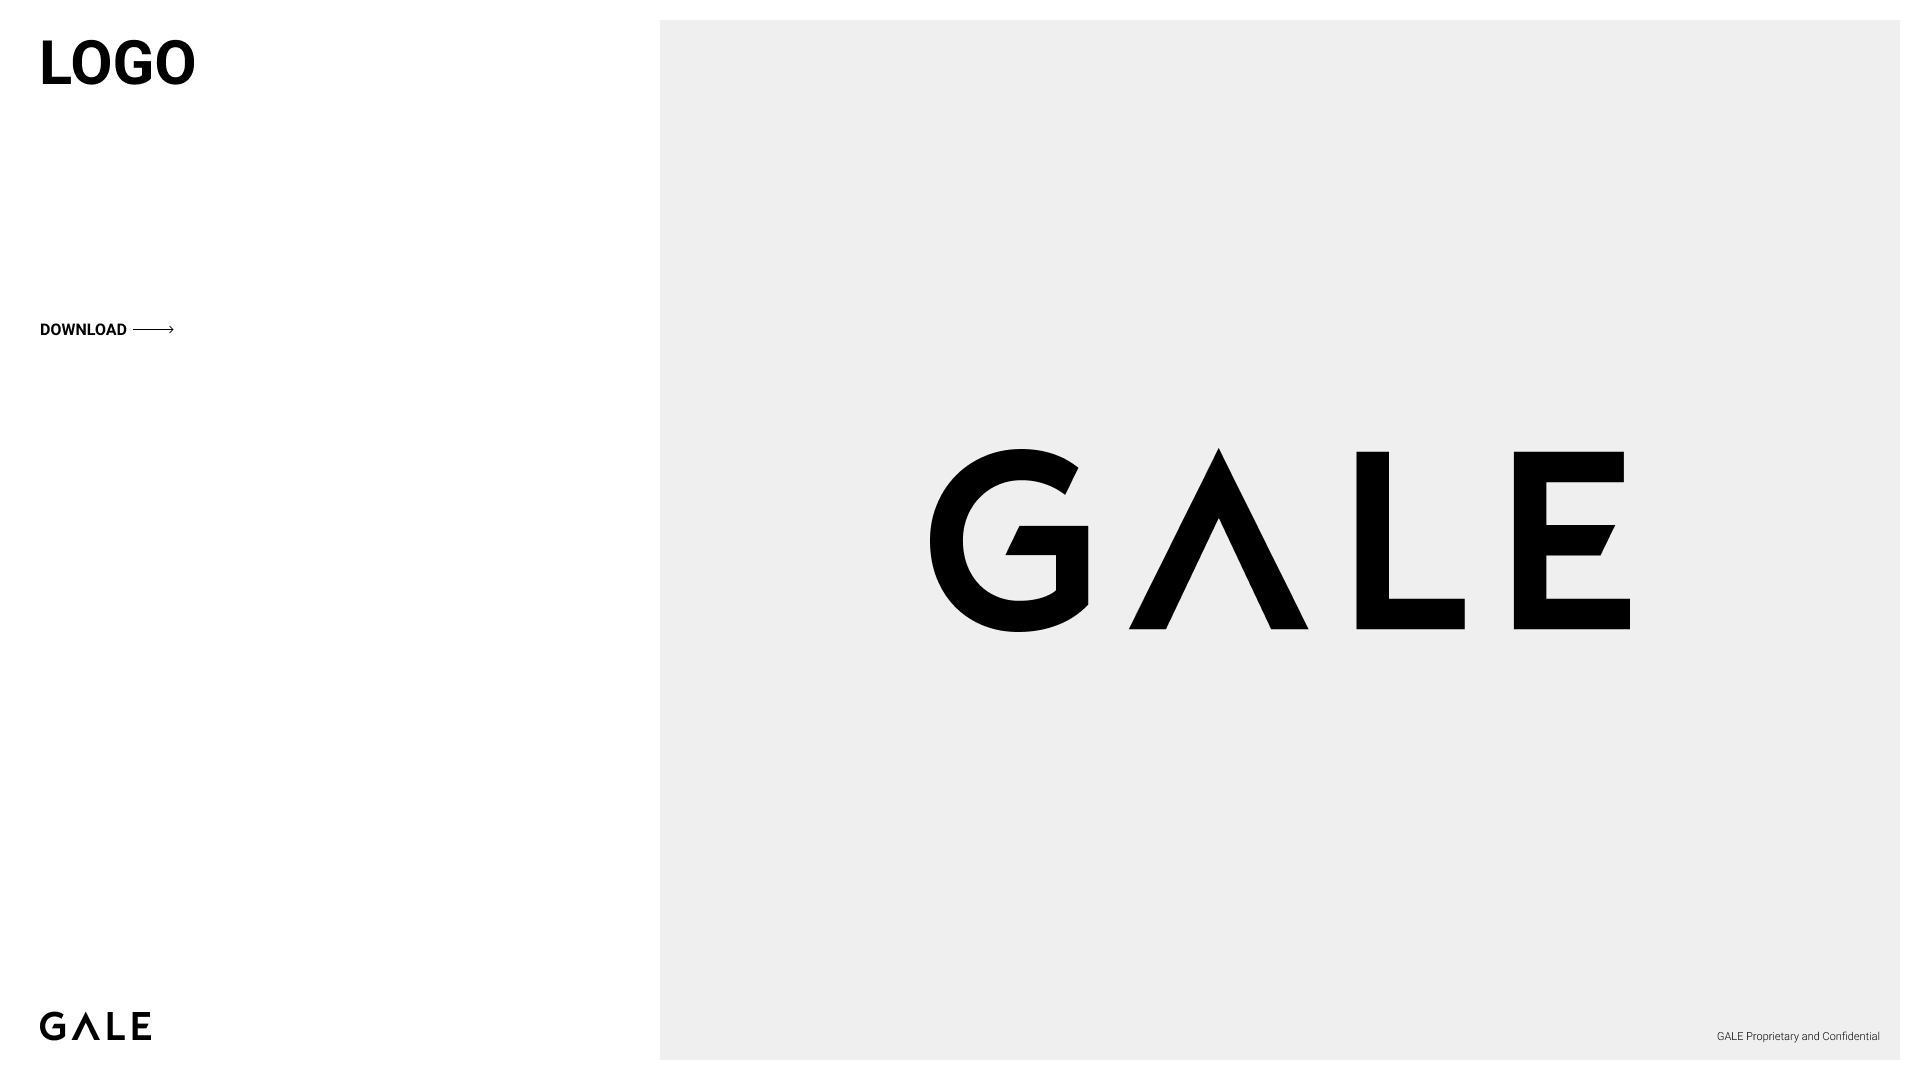 GALE_Branding_Logos